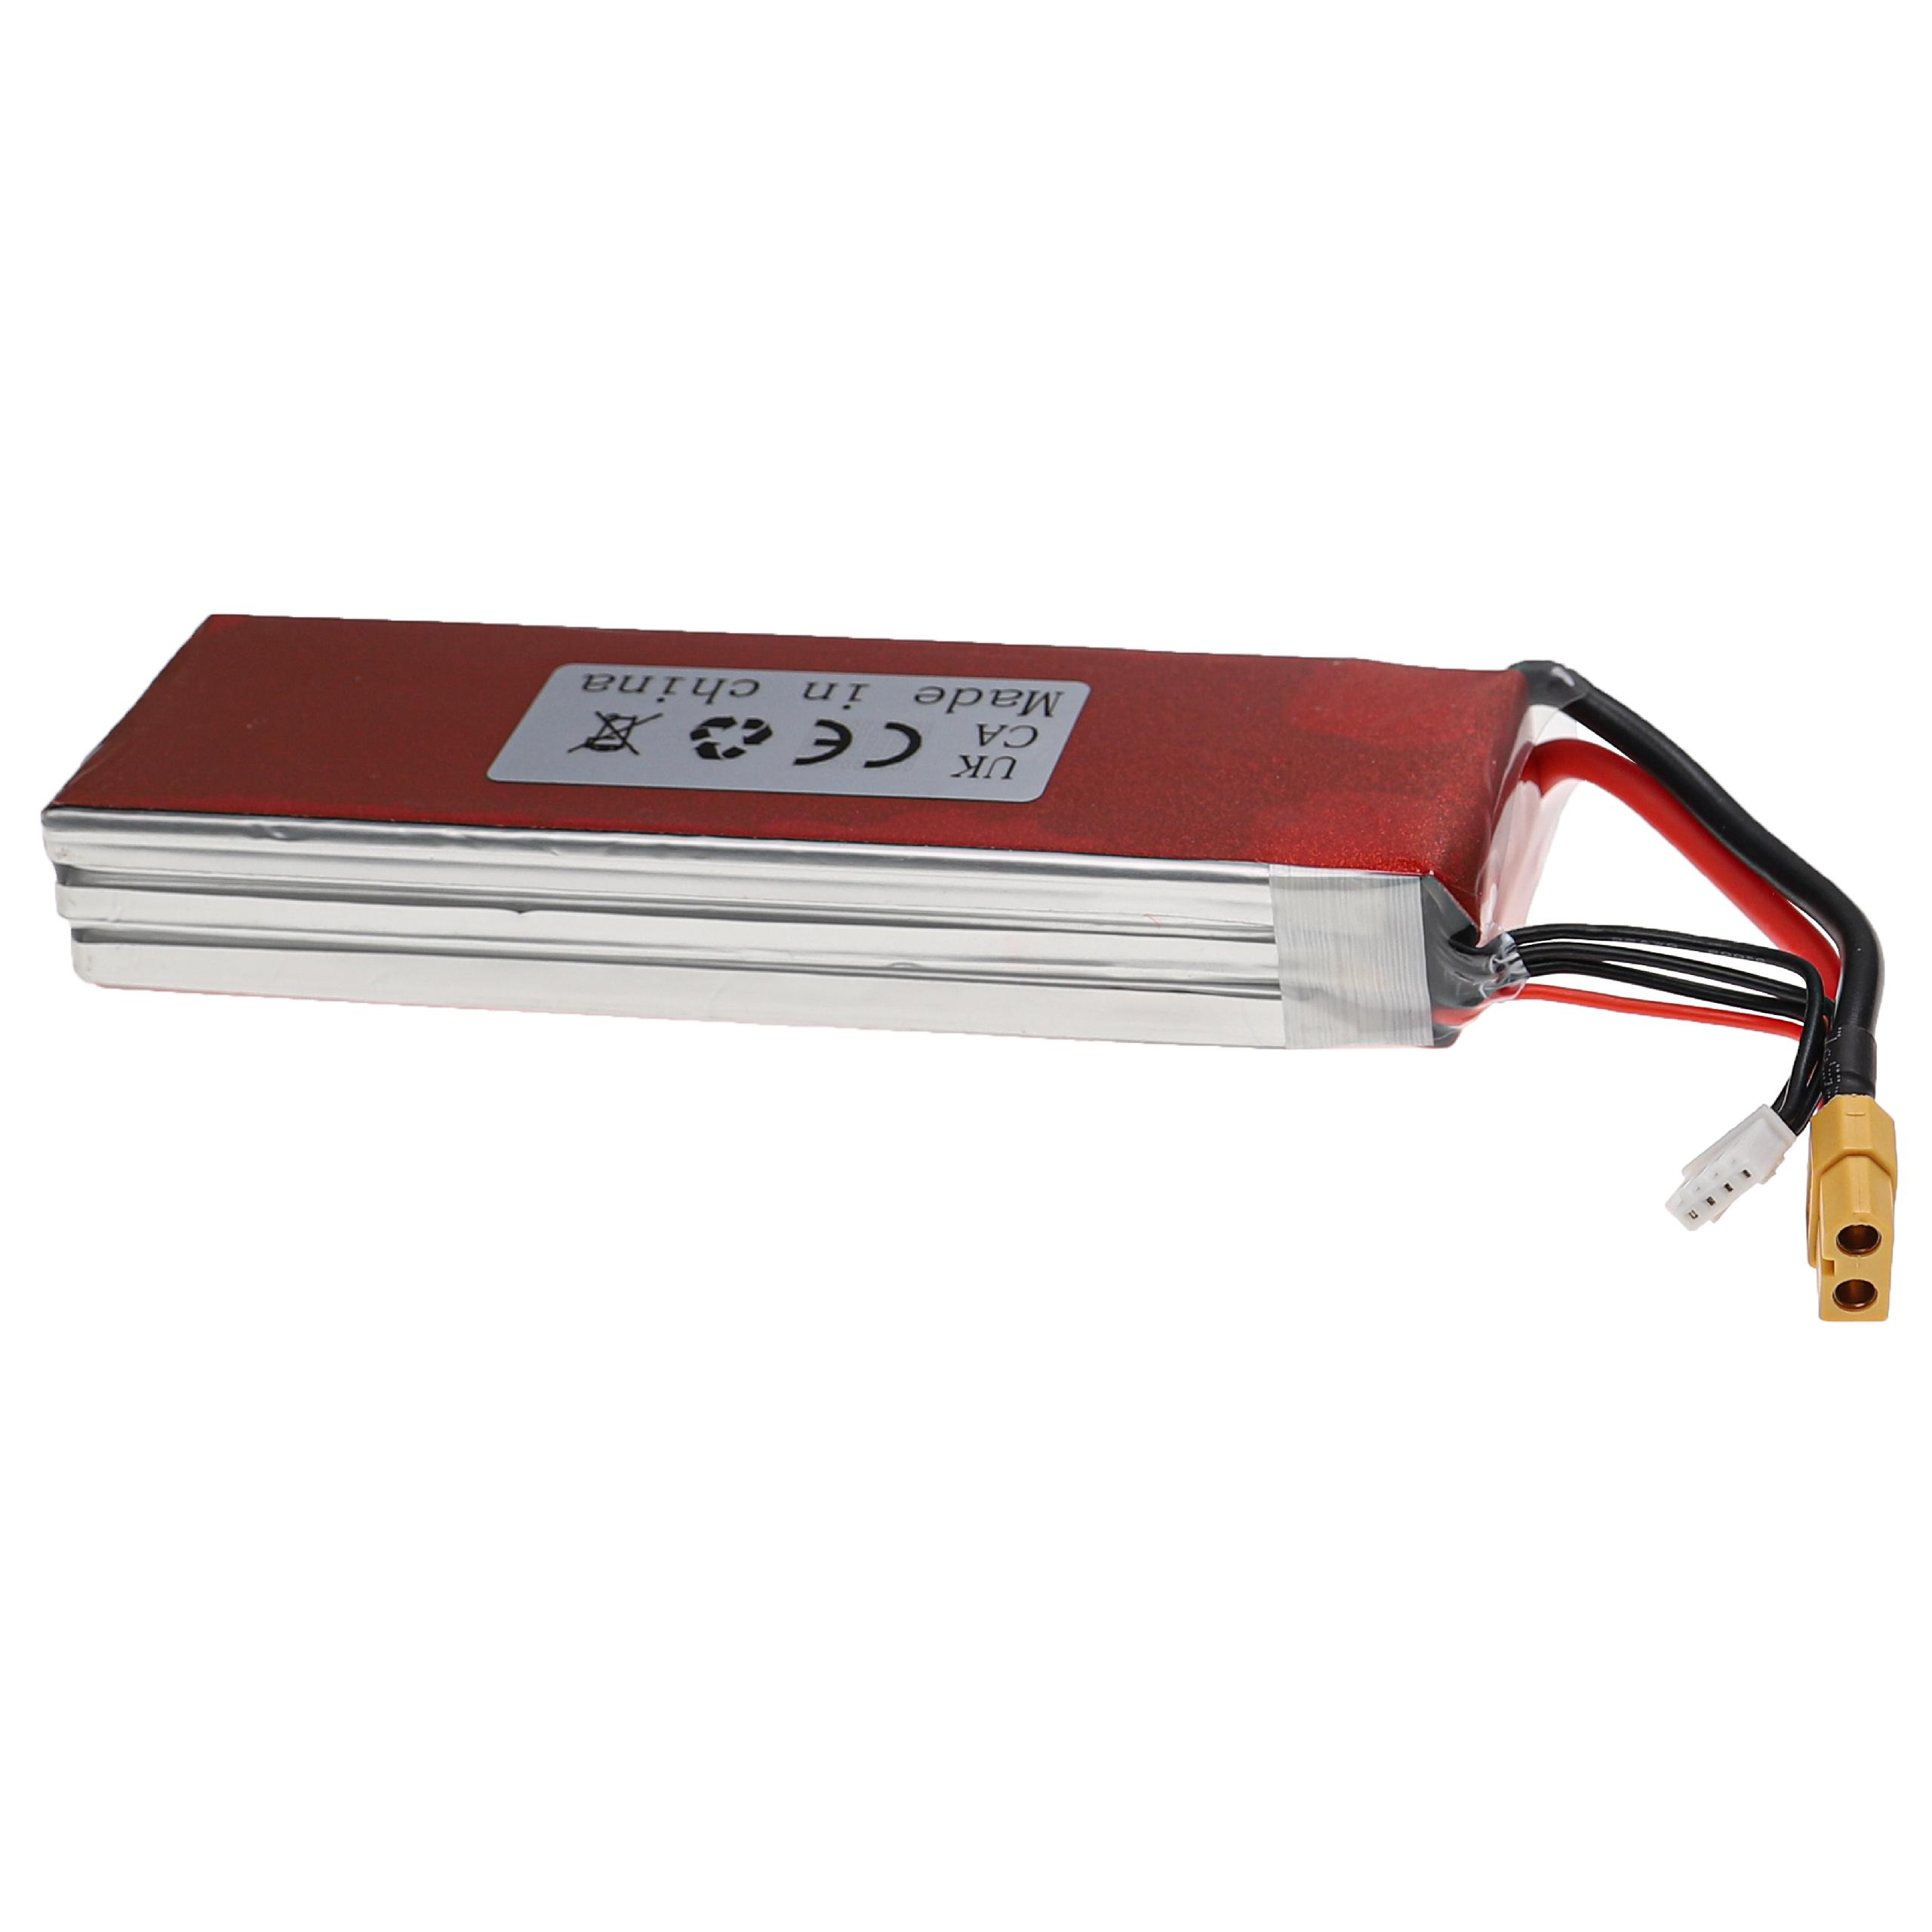 Batería para dispositivos modelismo - 5200 mAh 11,1 V Li-poli, XT60